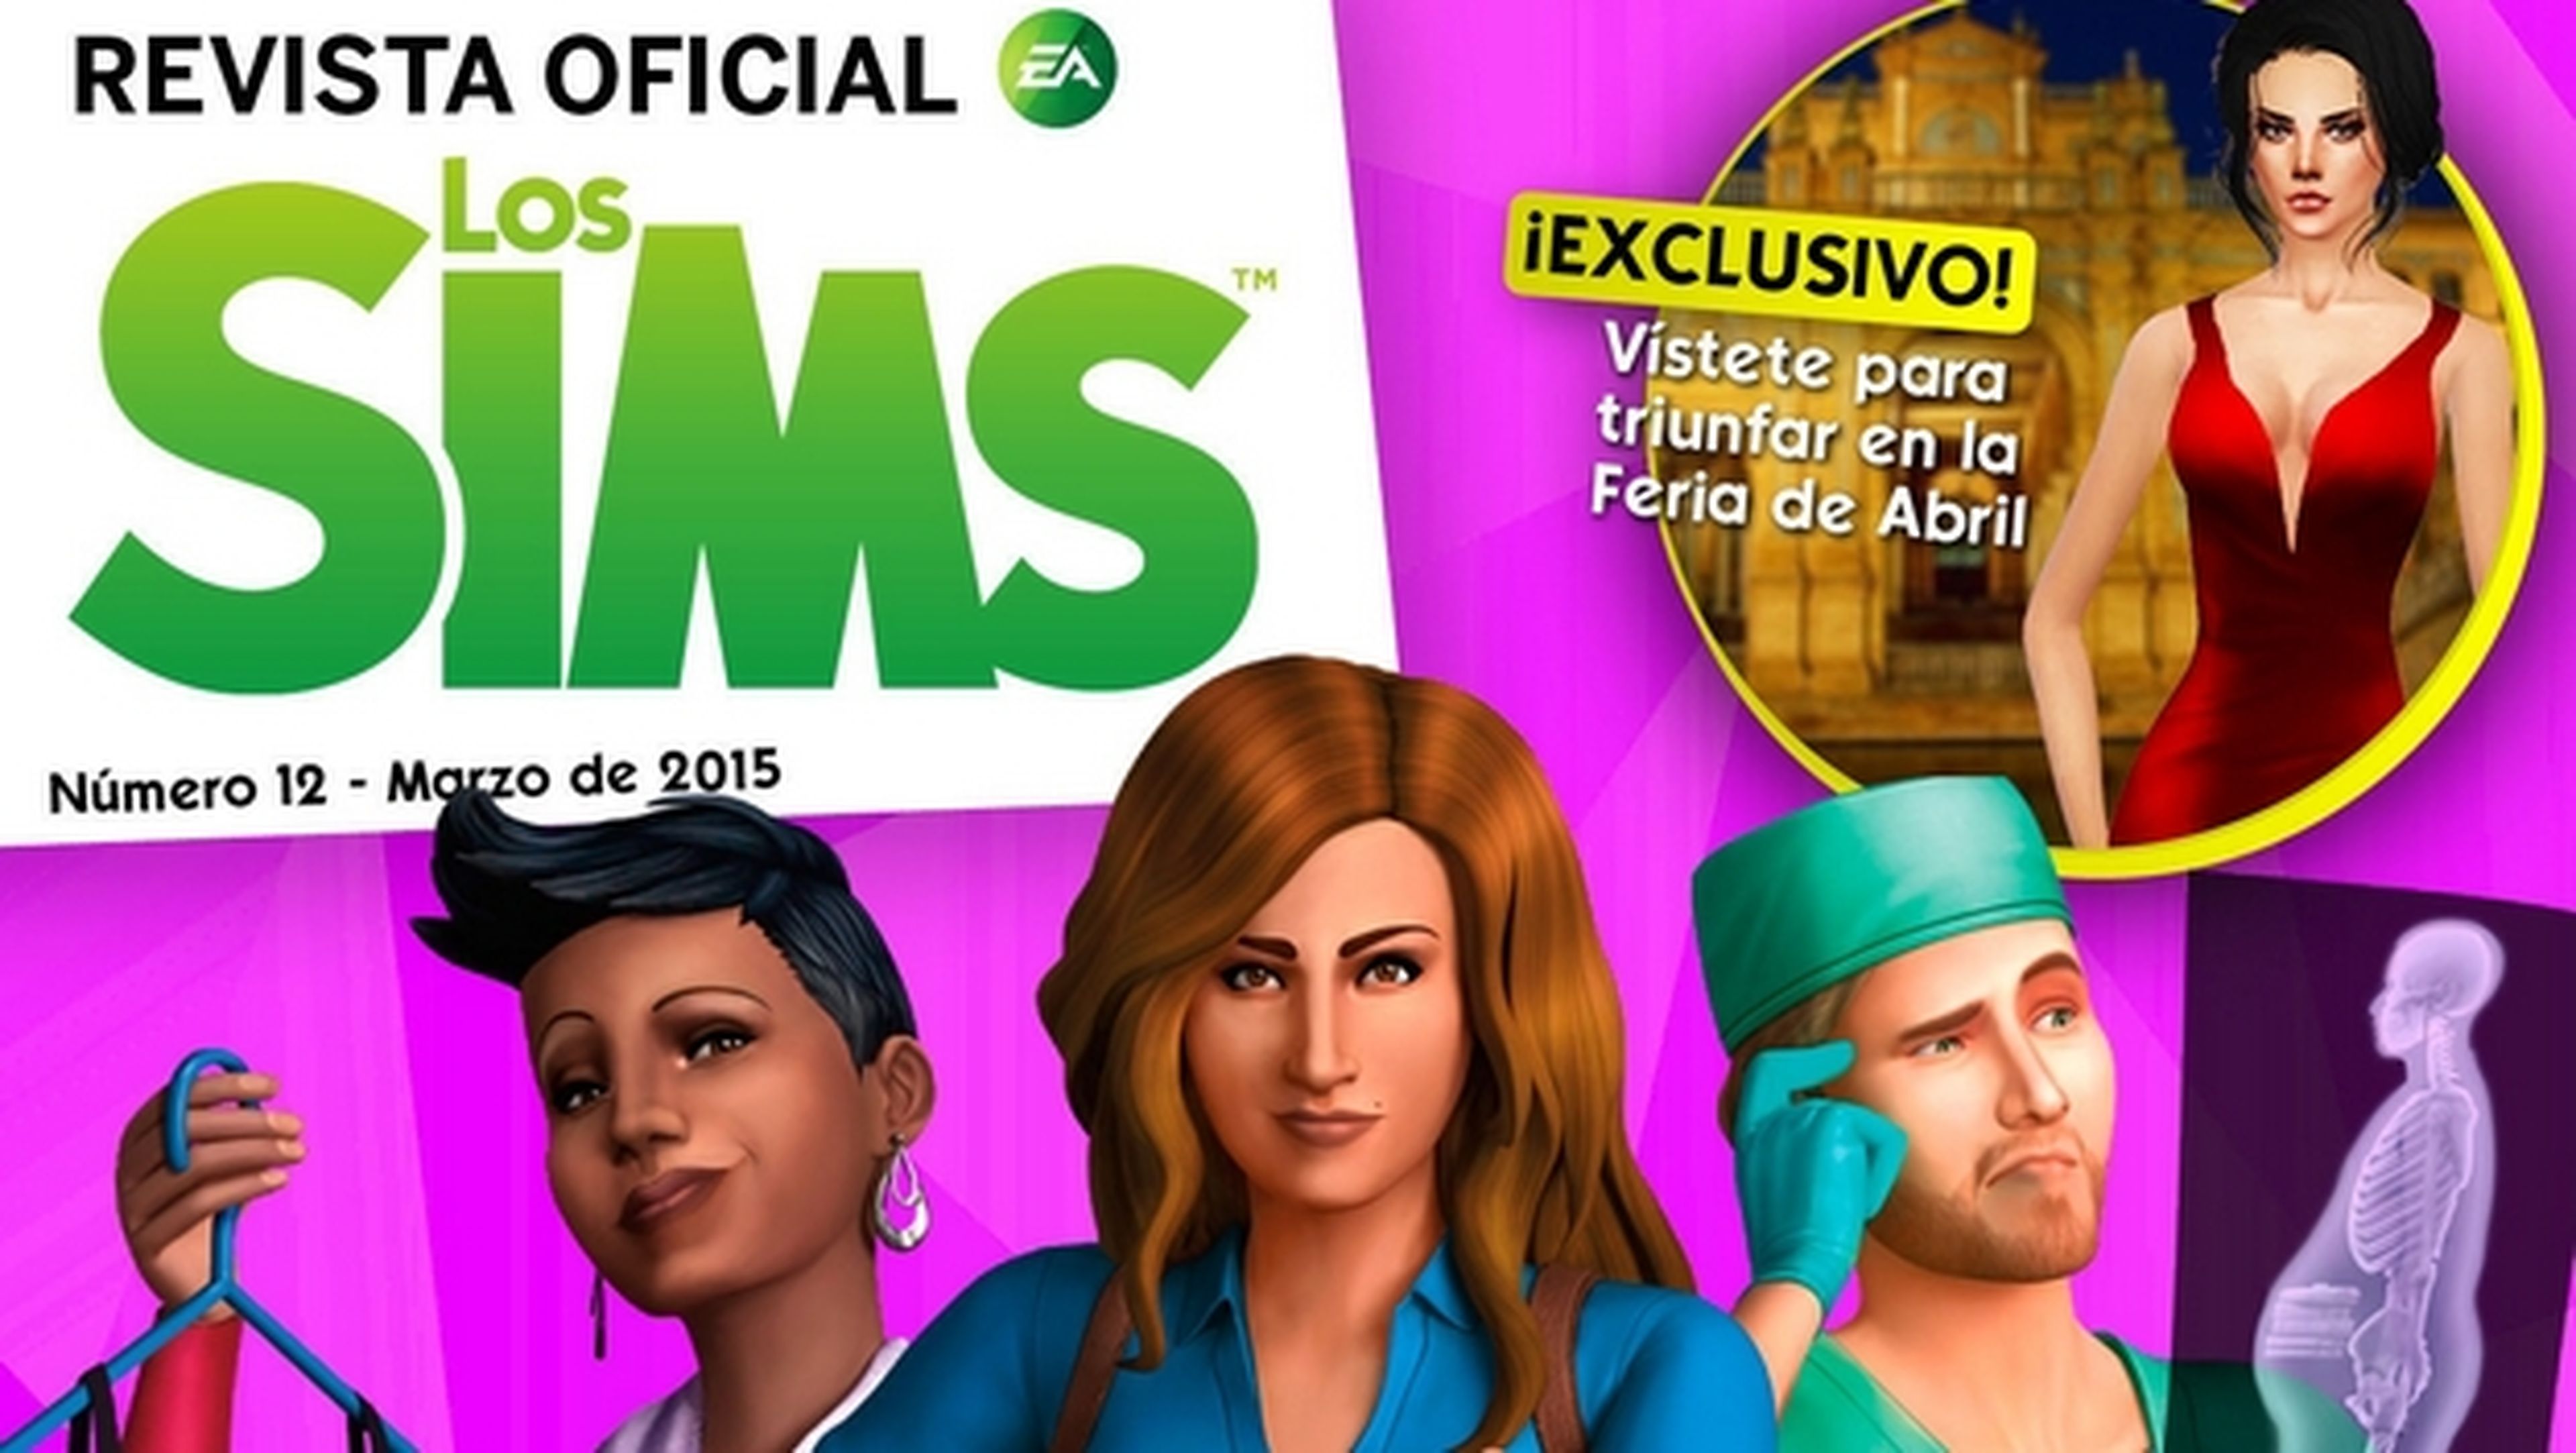 Revista Oficial de los Sims Número 12. Descárgala gratis para iOS y Android. Con toda la información de la primera expansión Los Sims 4 ¡A Trabajar!